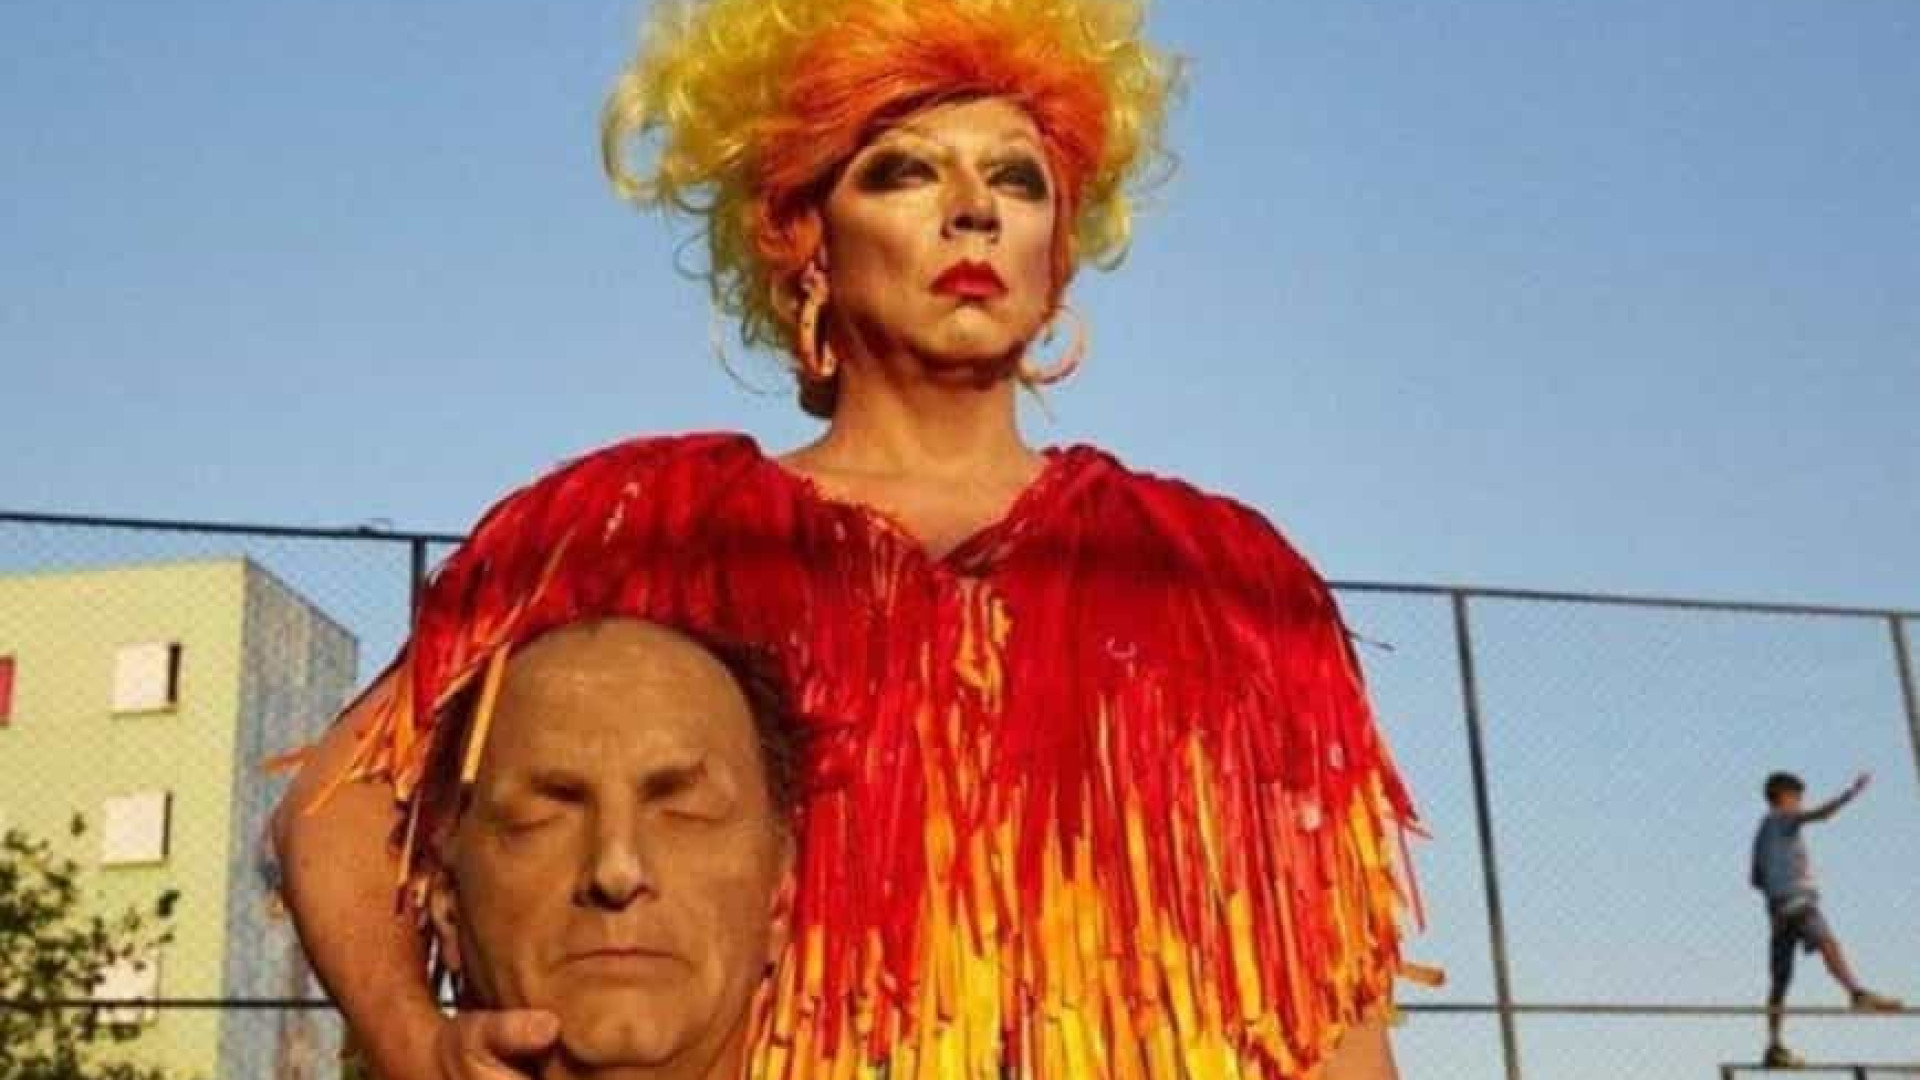 Justiça analisa imagem em que drag queen segura escultura da cabeça decapitada de Bolsonaro